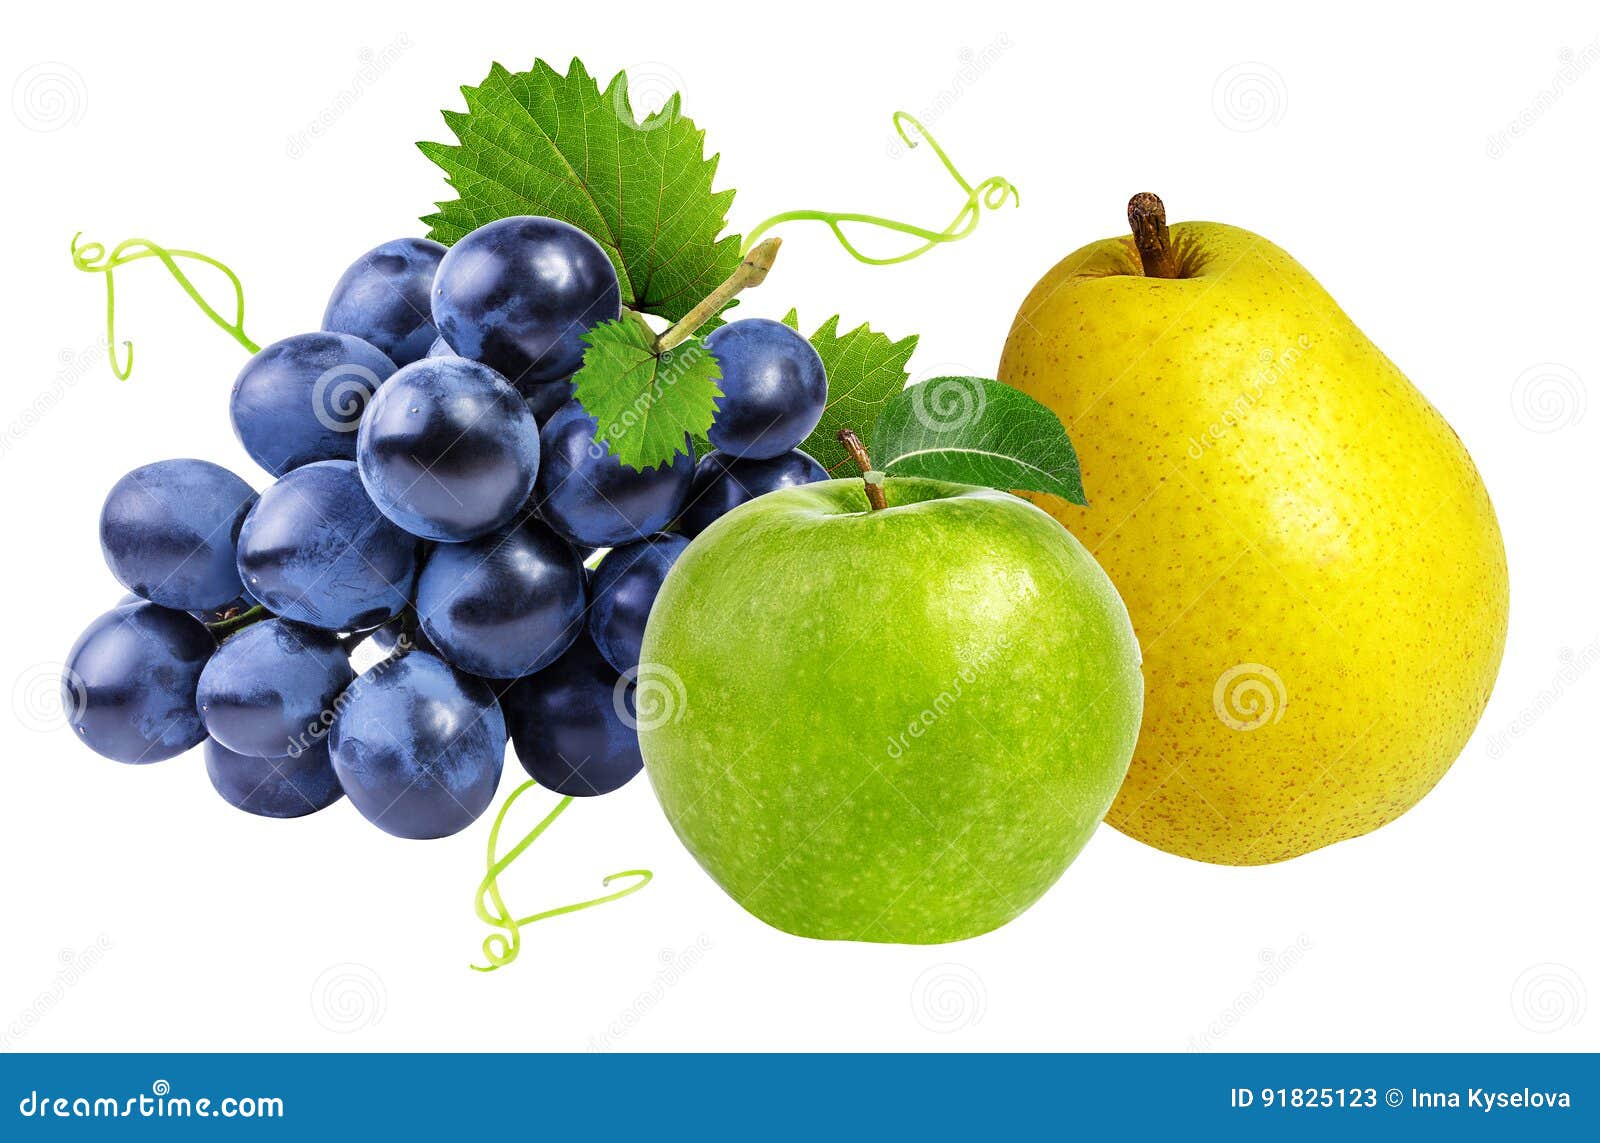 Grape pear. Амнезия яблоко виноград.